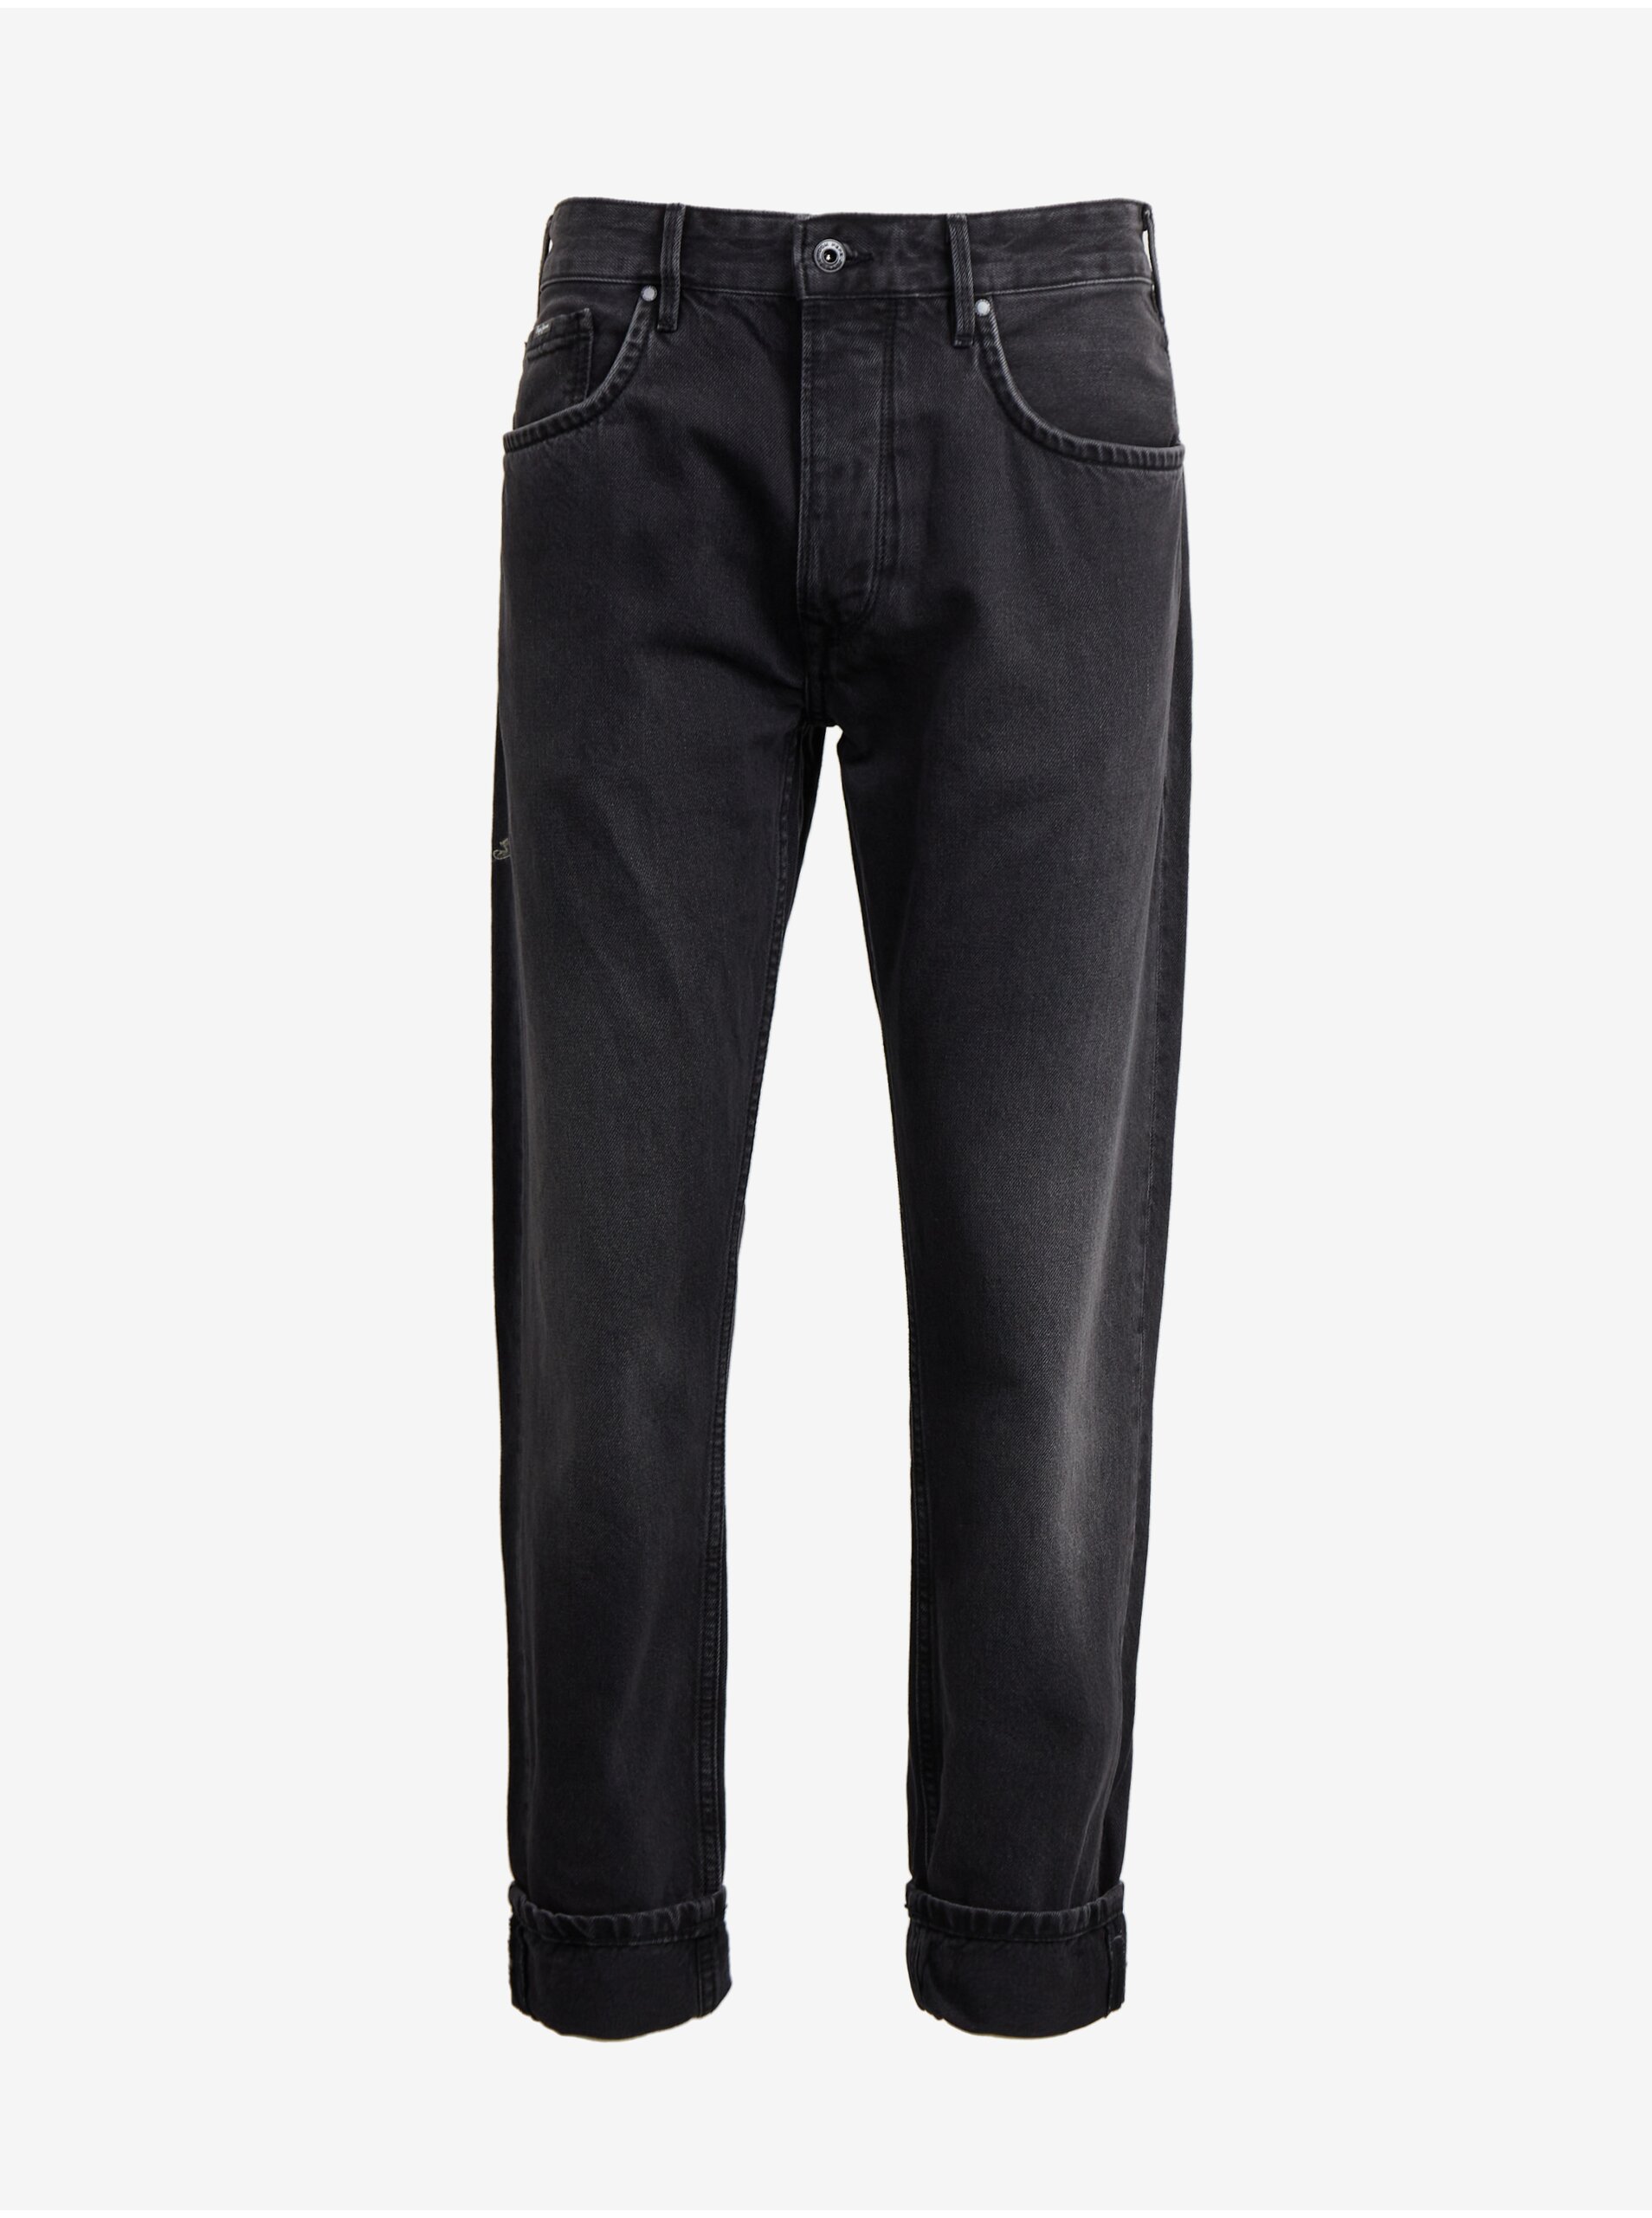 Black Men's Straight Fit Jeans Pepe Jeans Callen - Men's